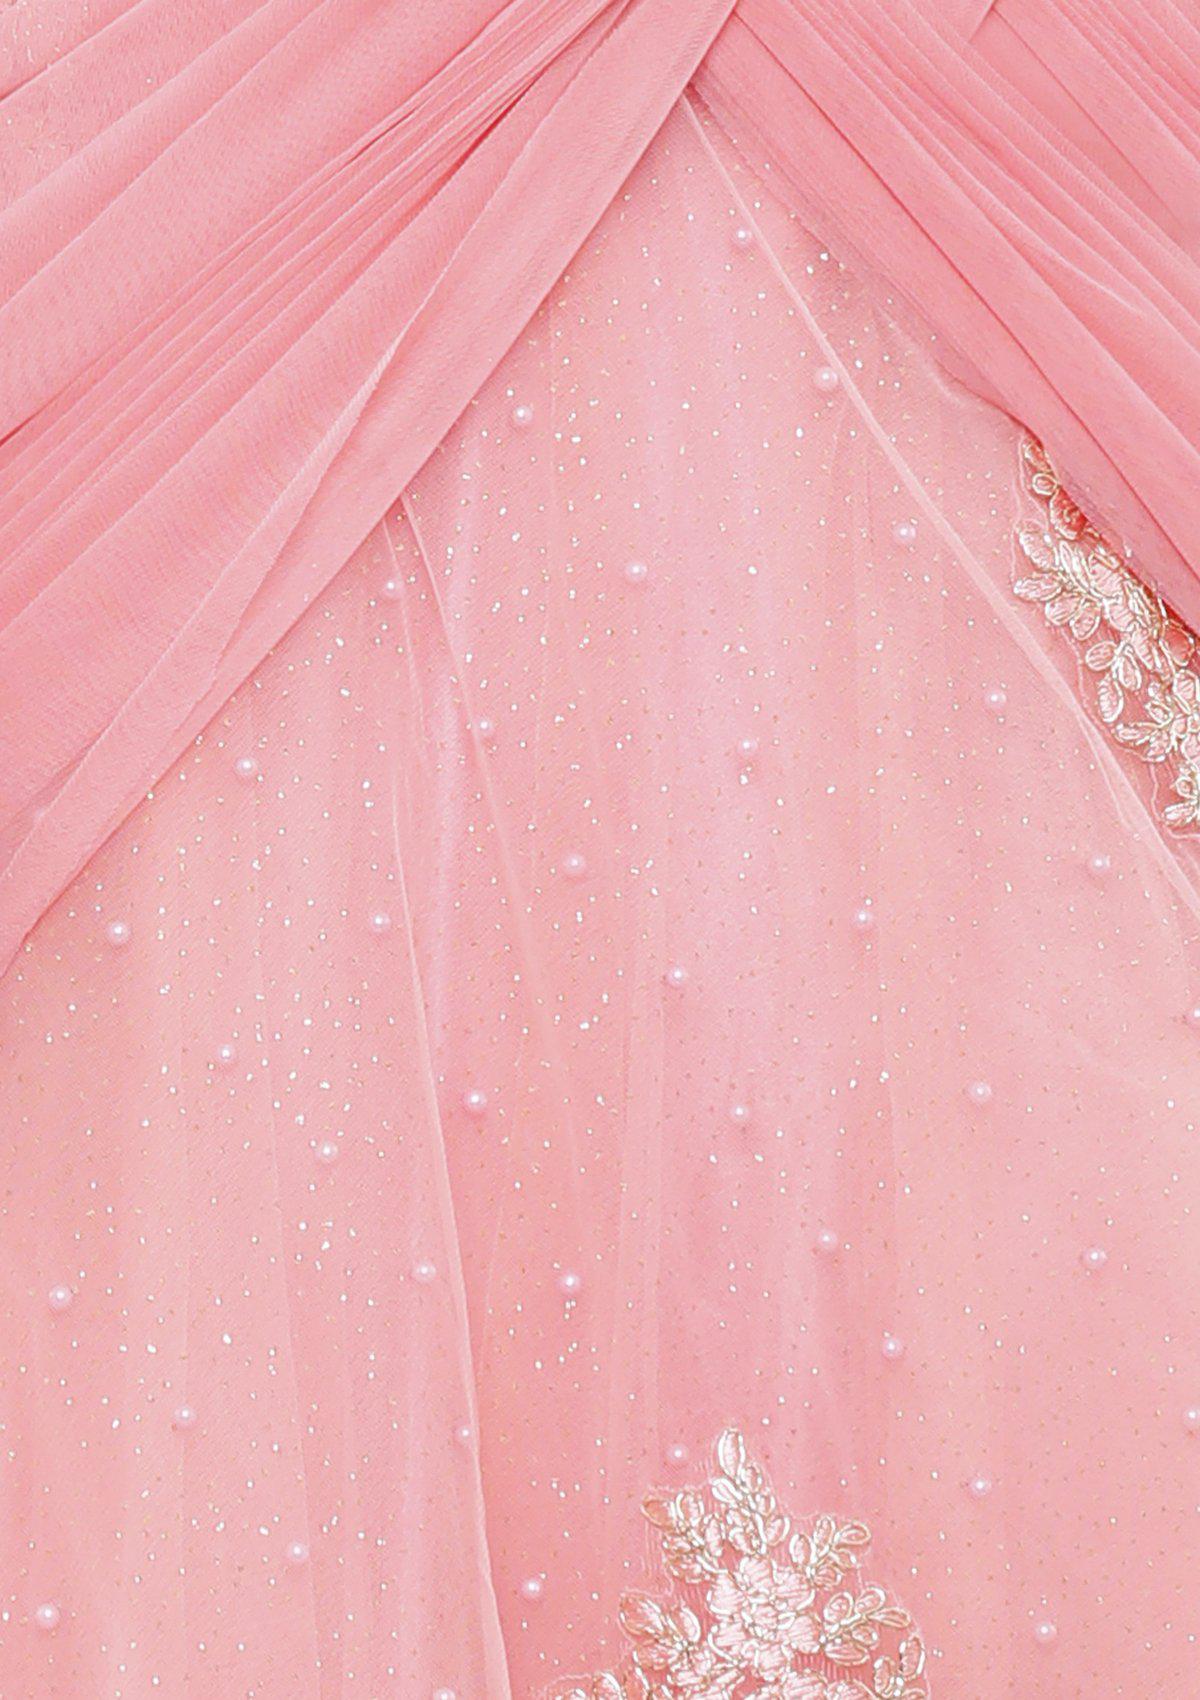 Glittering Pink Embellished Net Designer Gown-Koskii